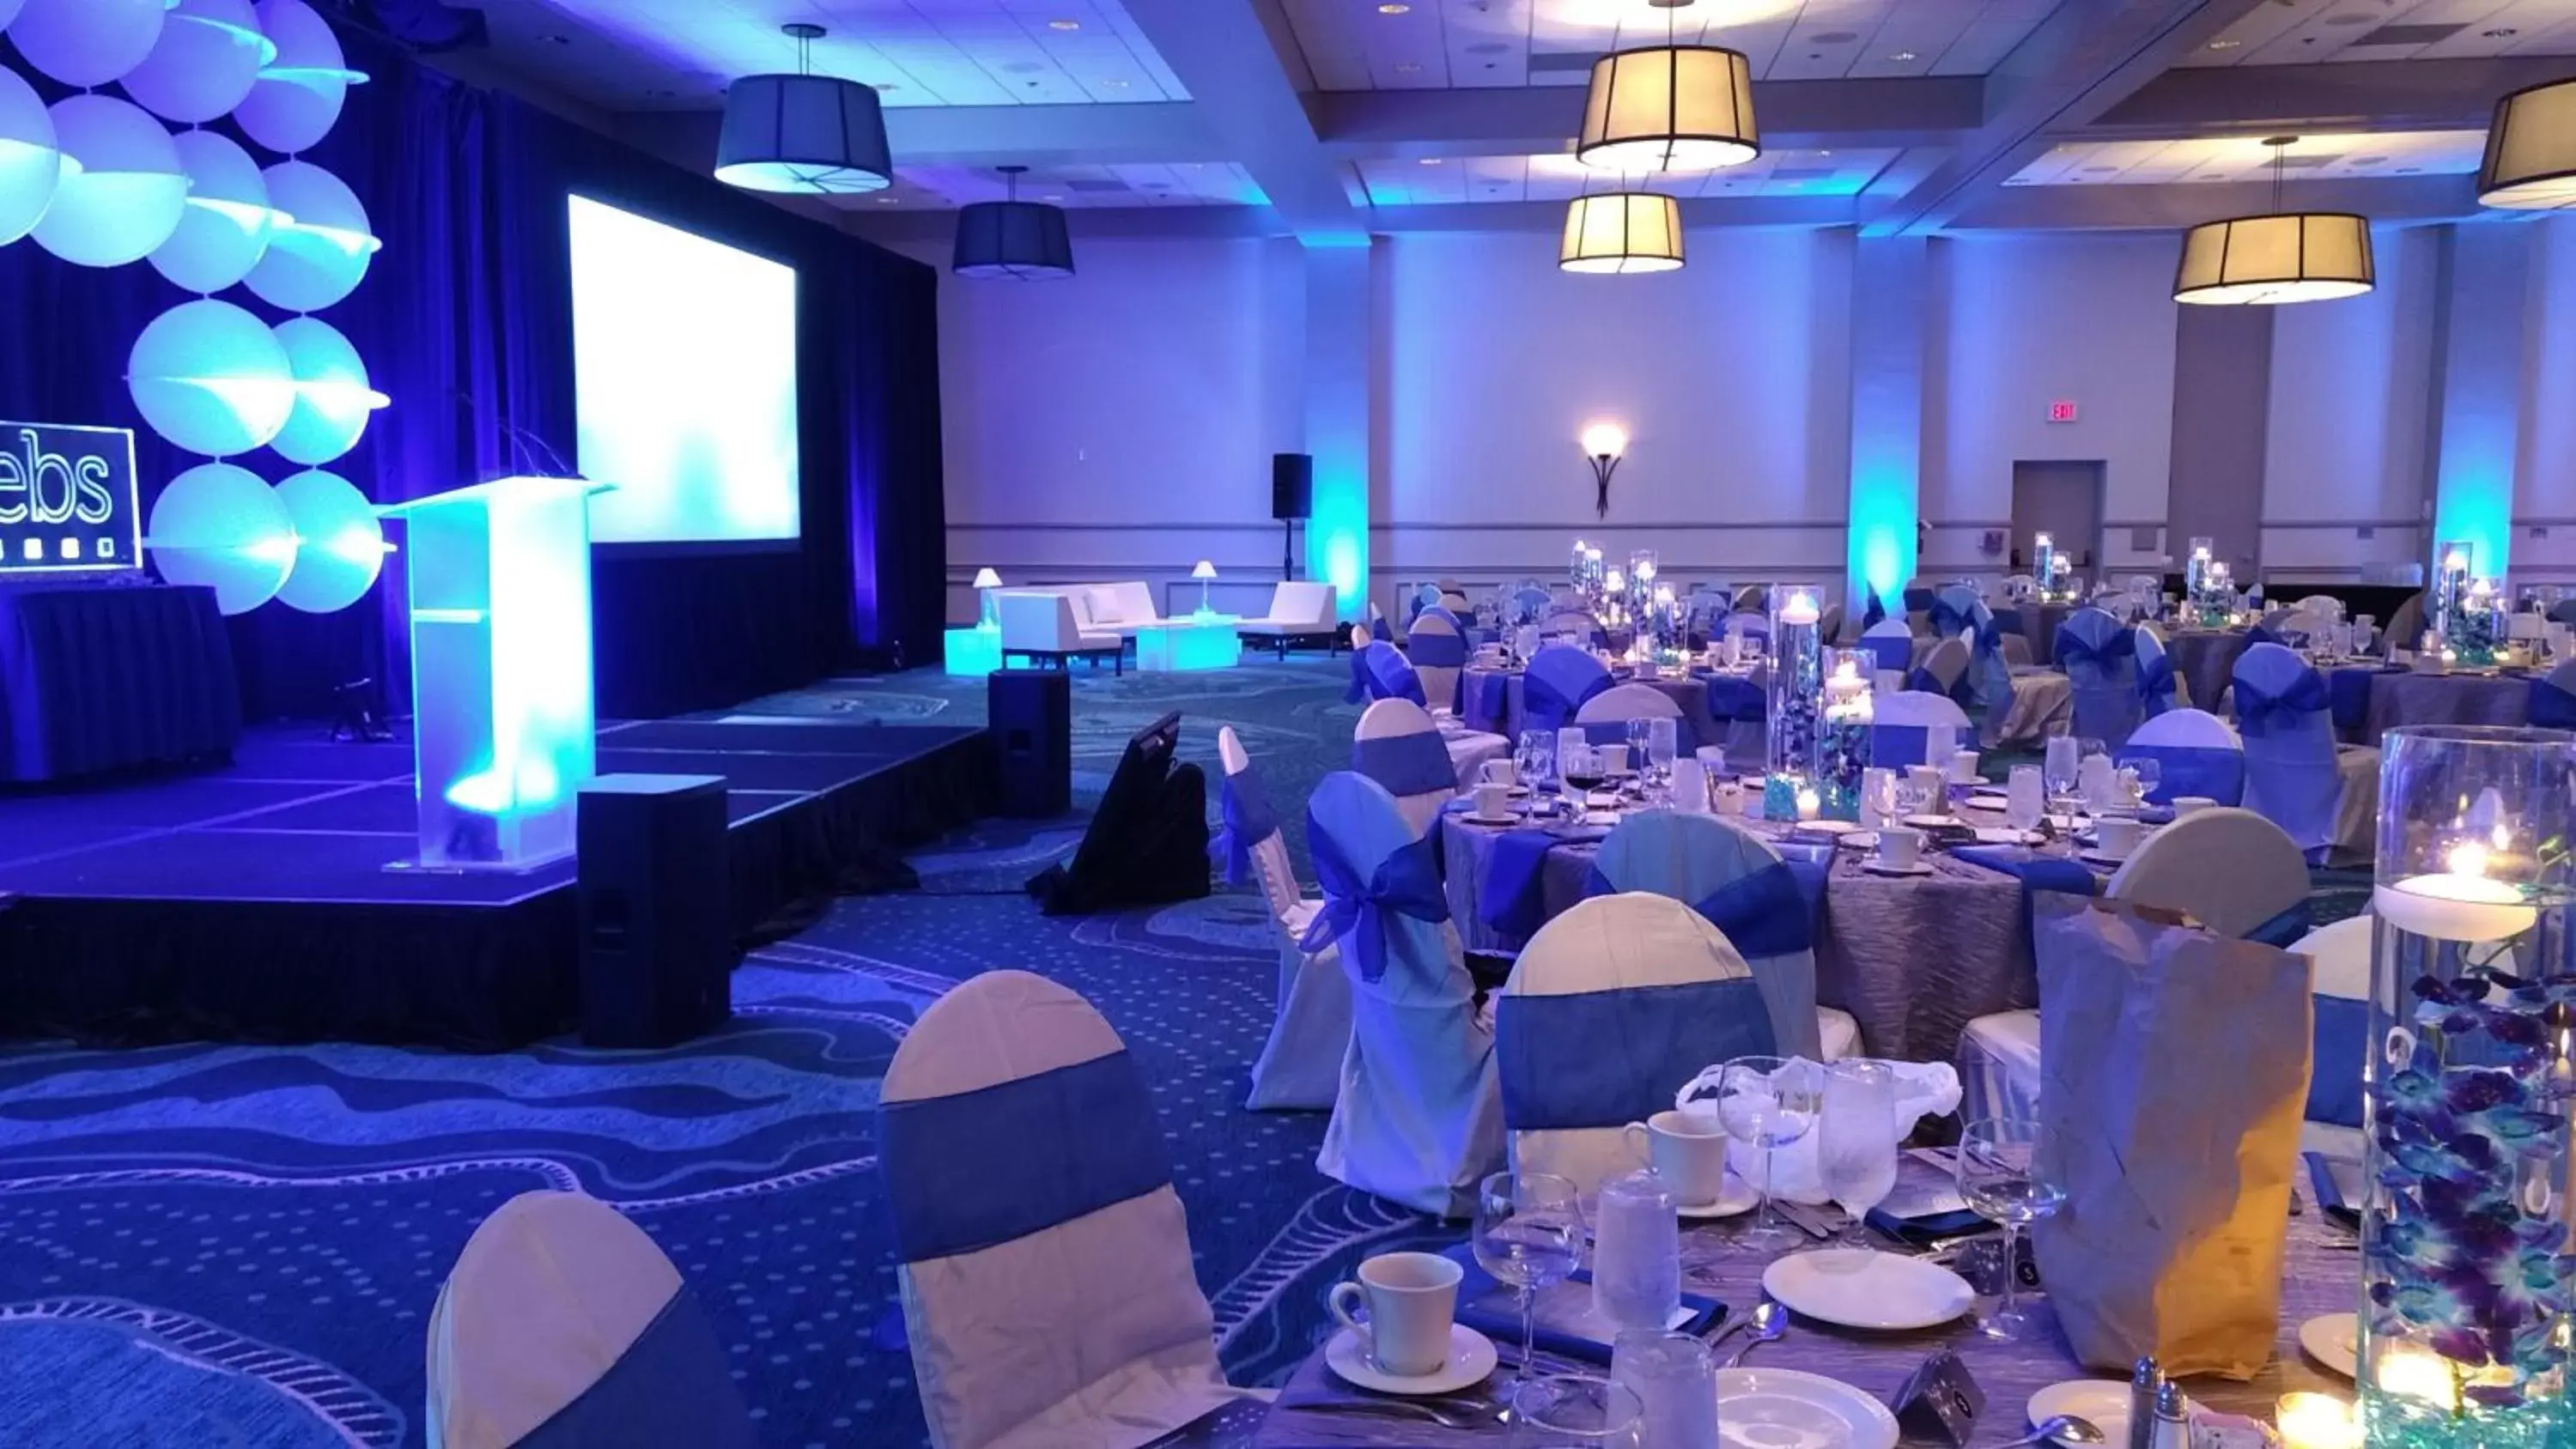 Banquet/Function facilities, Banquet Facilities in Wyndham Garden Lake Buena Vista Disney Springs® Resort Area